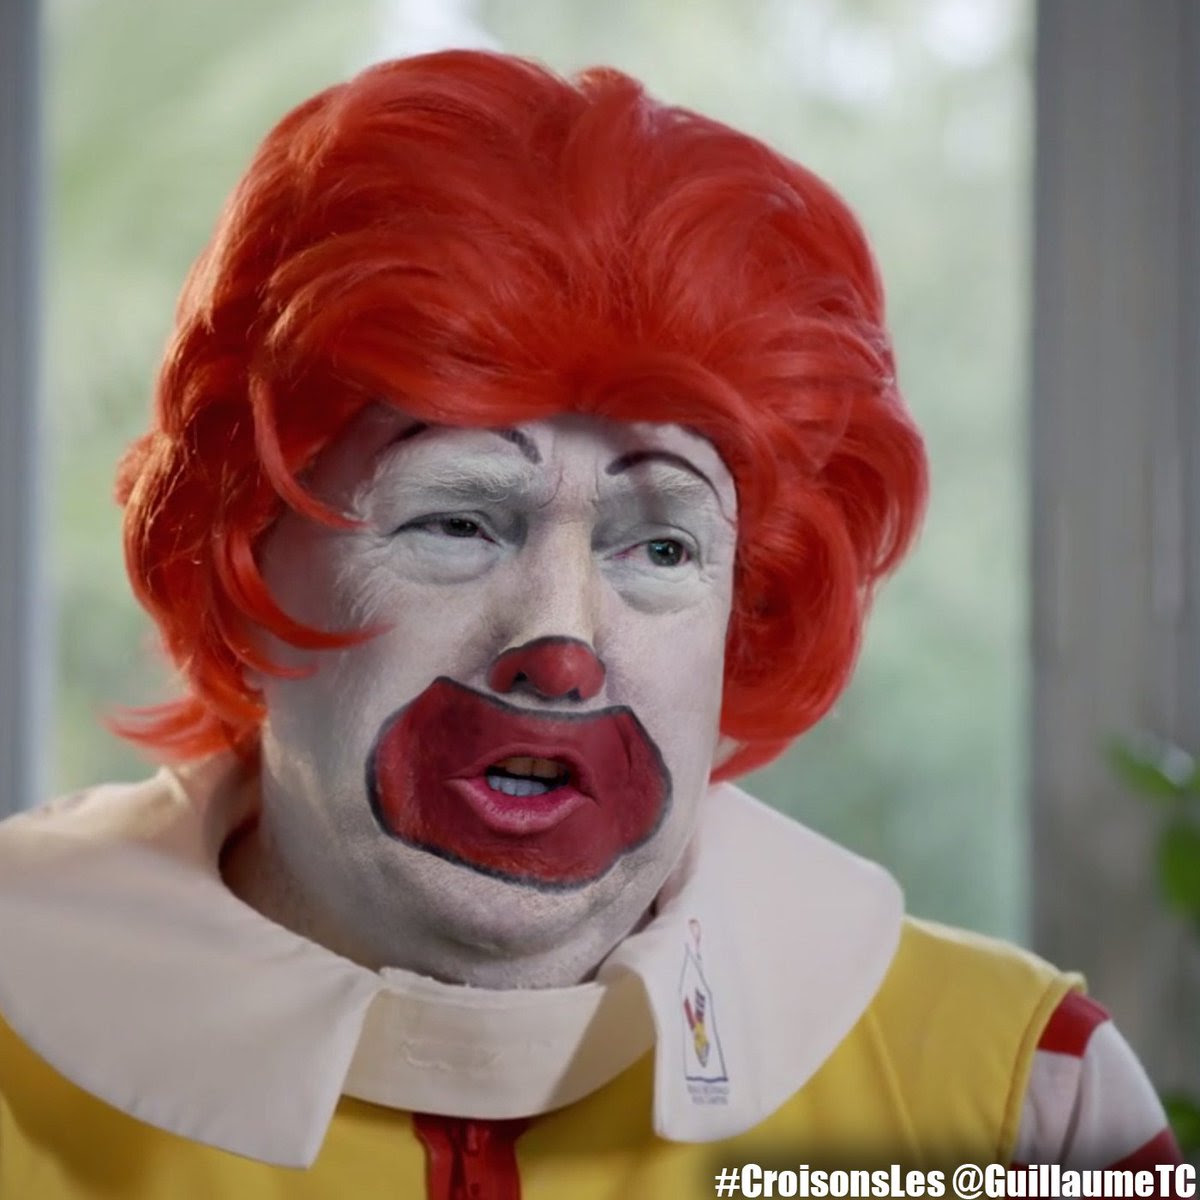 Trump as Ronald McDonald